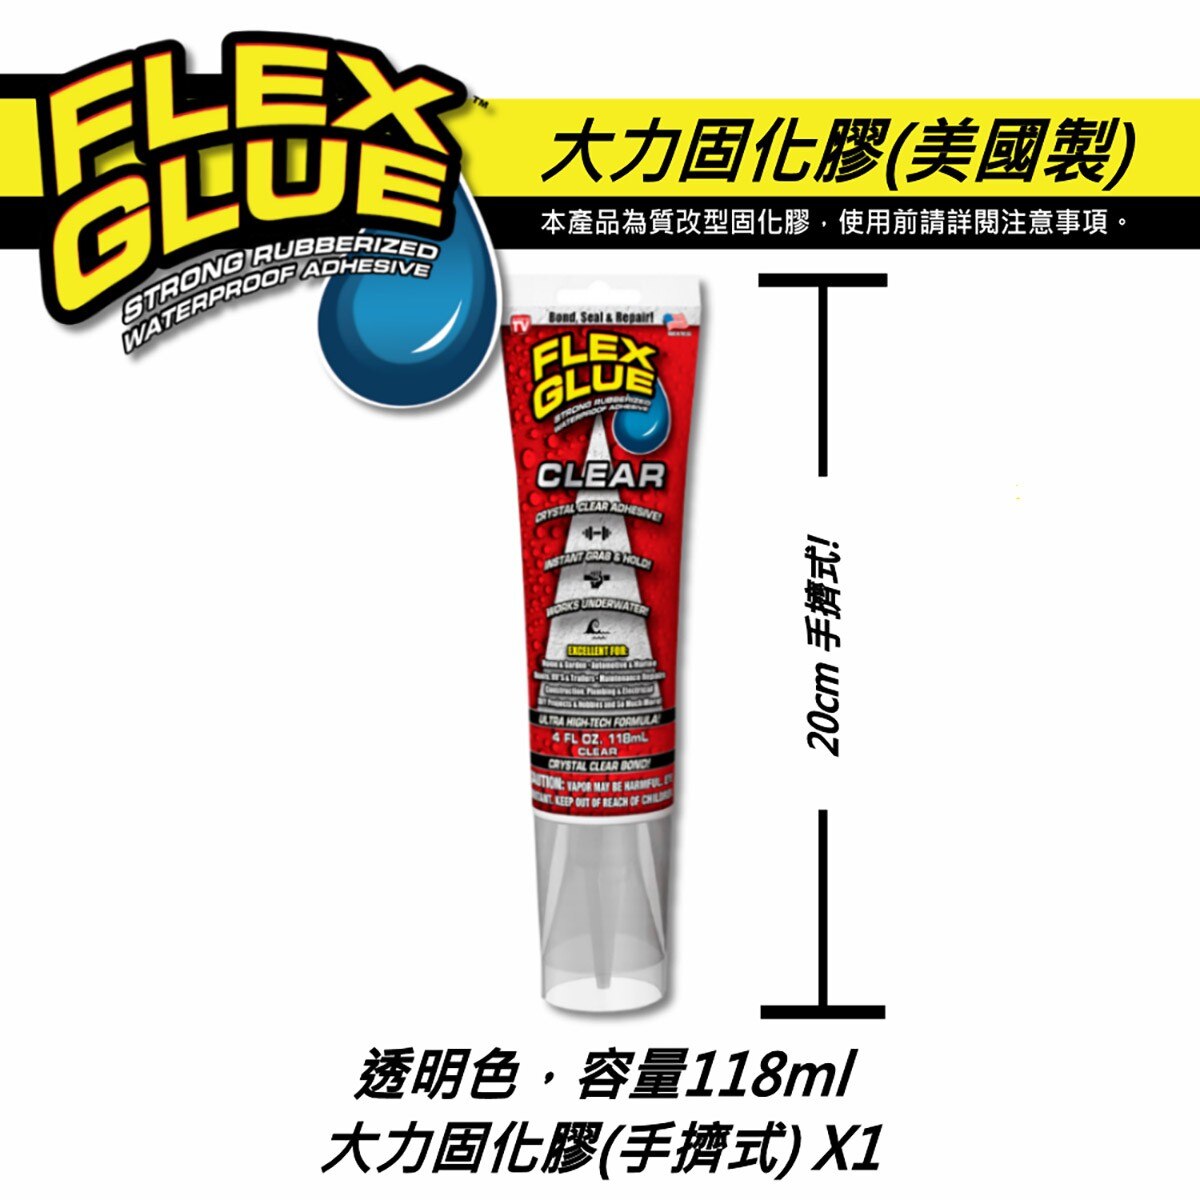 美國FLEX GLUE大力固化膠透明色手擠式包裝，速乾配方、接著後快速固化，穩固牢靠。強力黏著力，不垂流、不乾裂，適用各類修補。